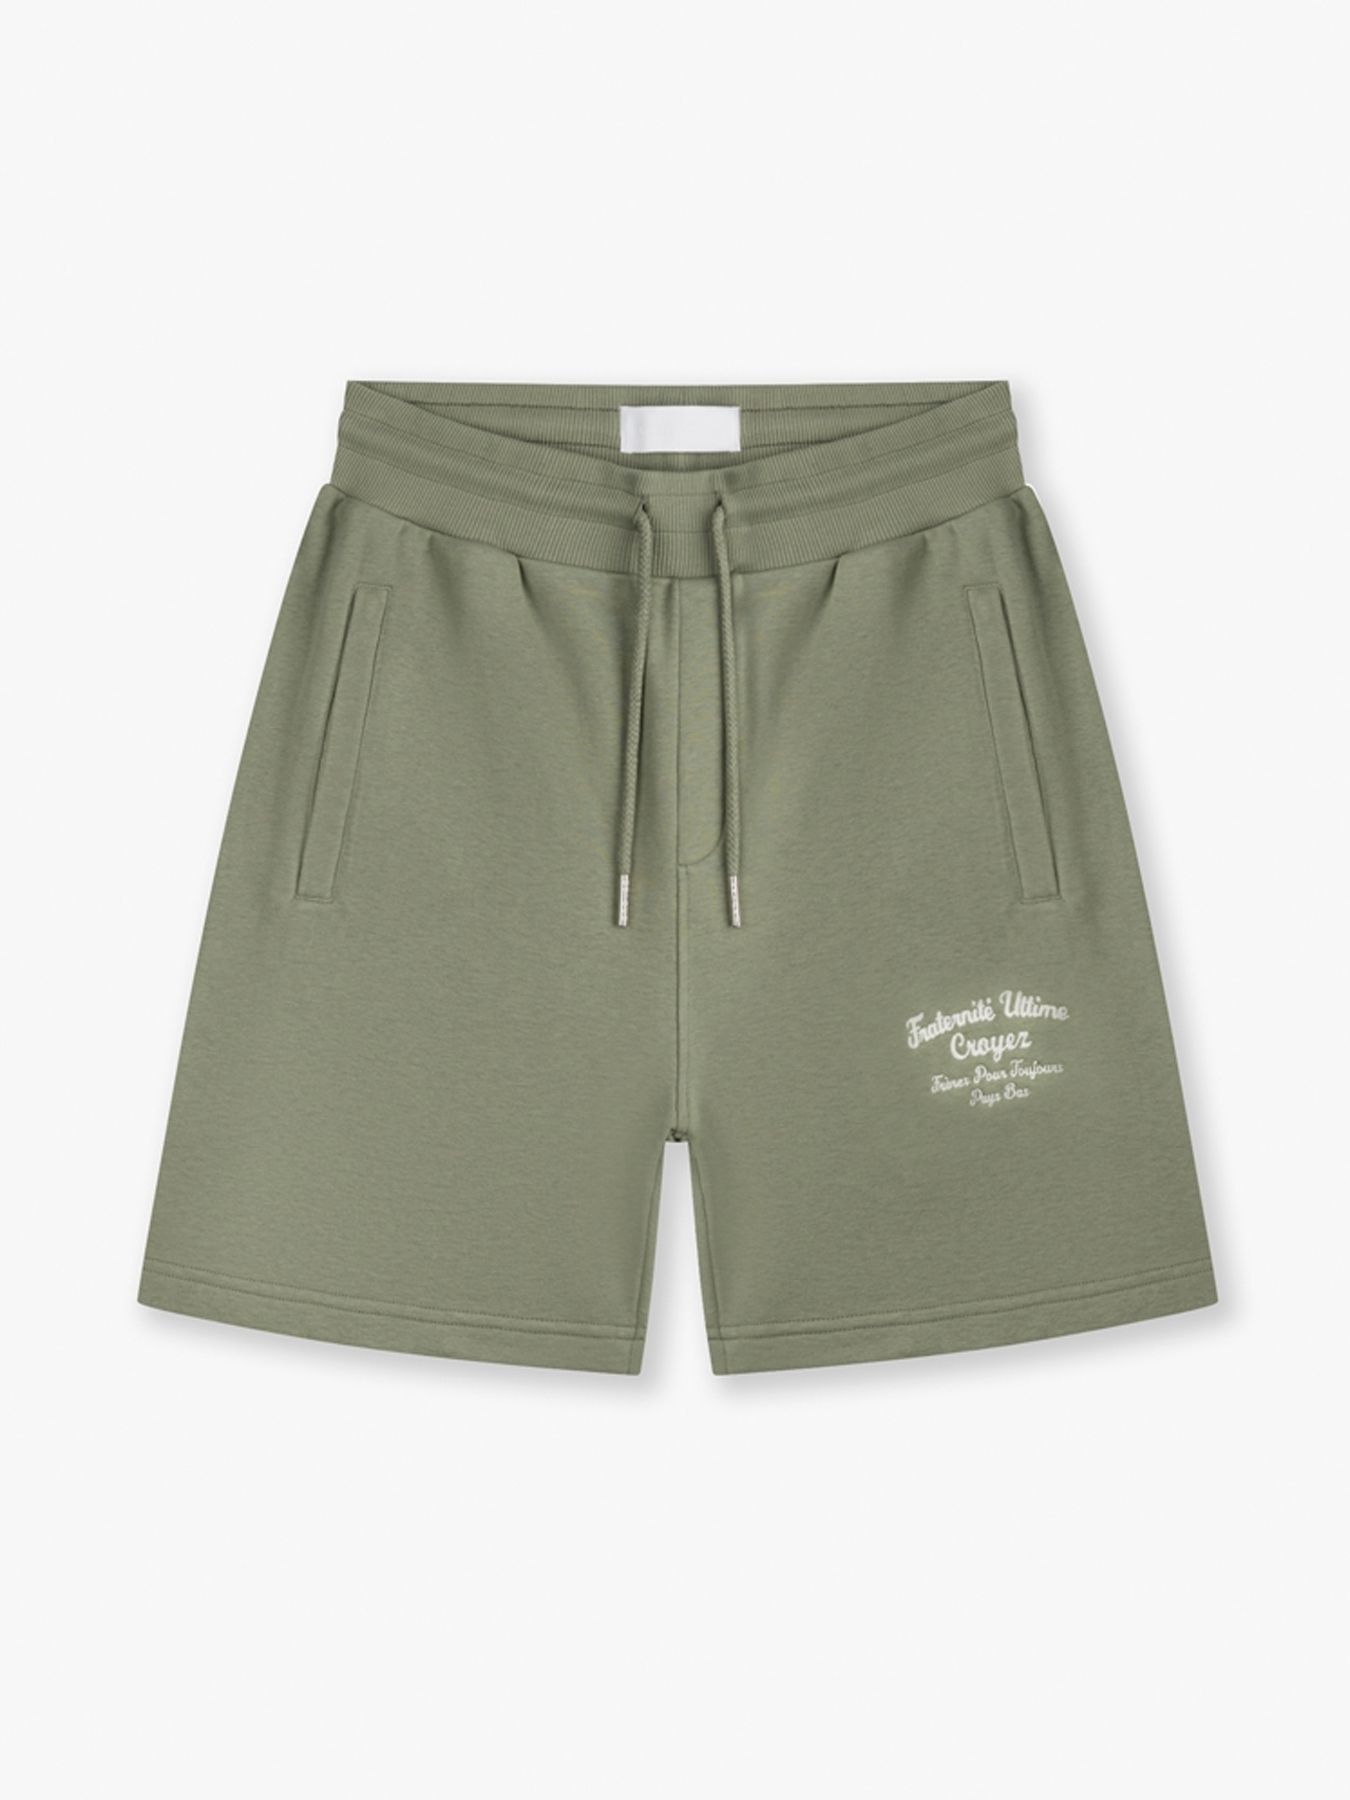 Fraternite shorts